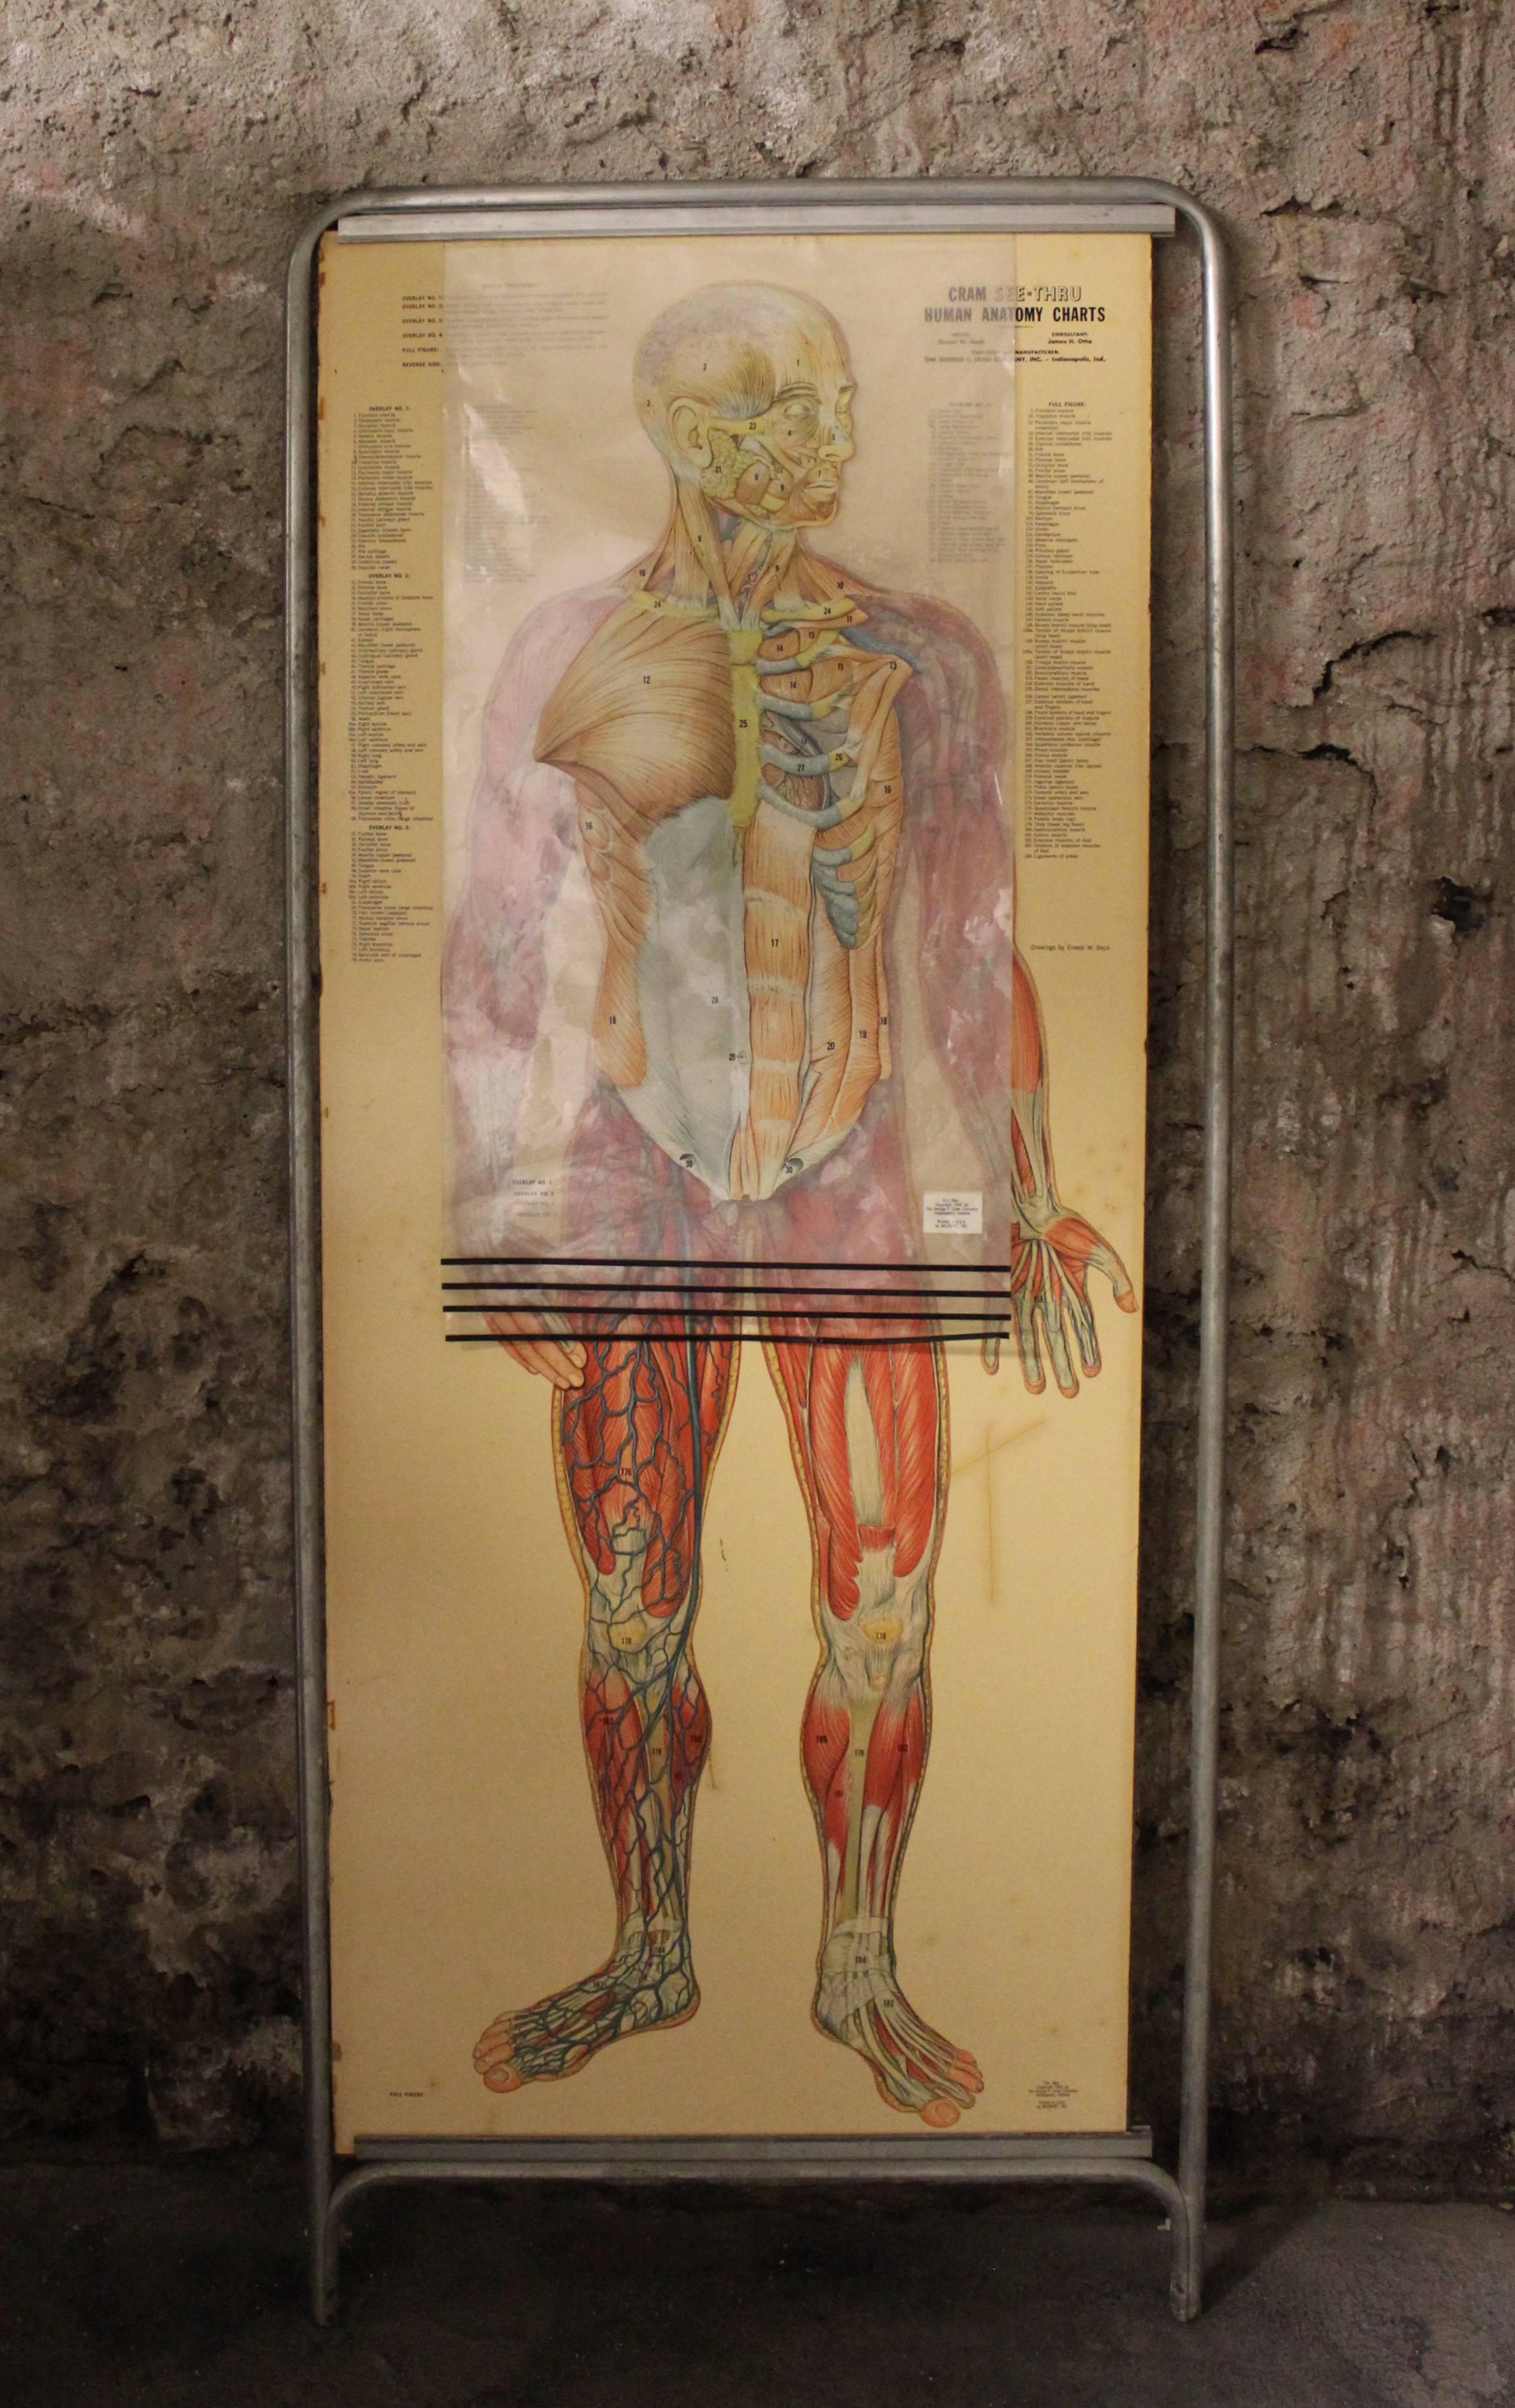 Il s'agit d'une fantastique planche d'anatomie double face avec quatre superpositions distinctes montrant le corps humain en différentes couches. Intitulée The Thin Man, cette pièce a été produite par la George F. Cram Company d'Indianapolis, dans